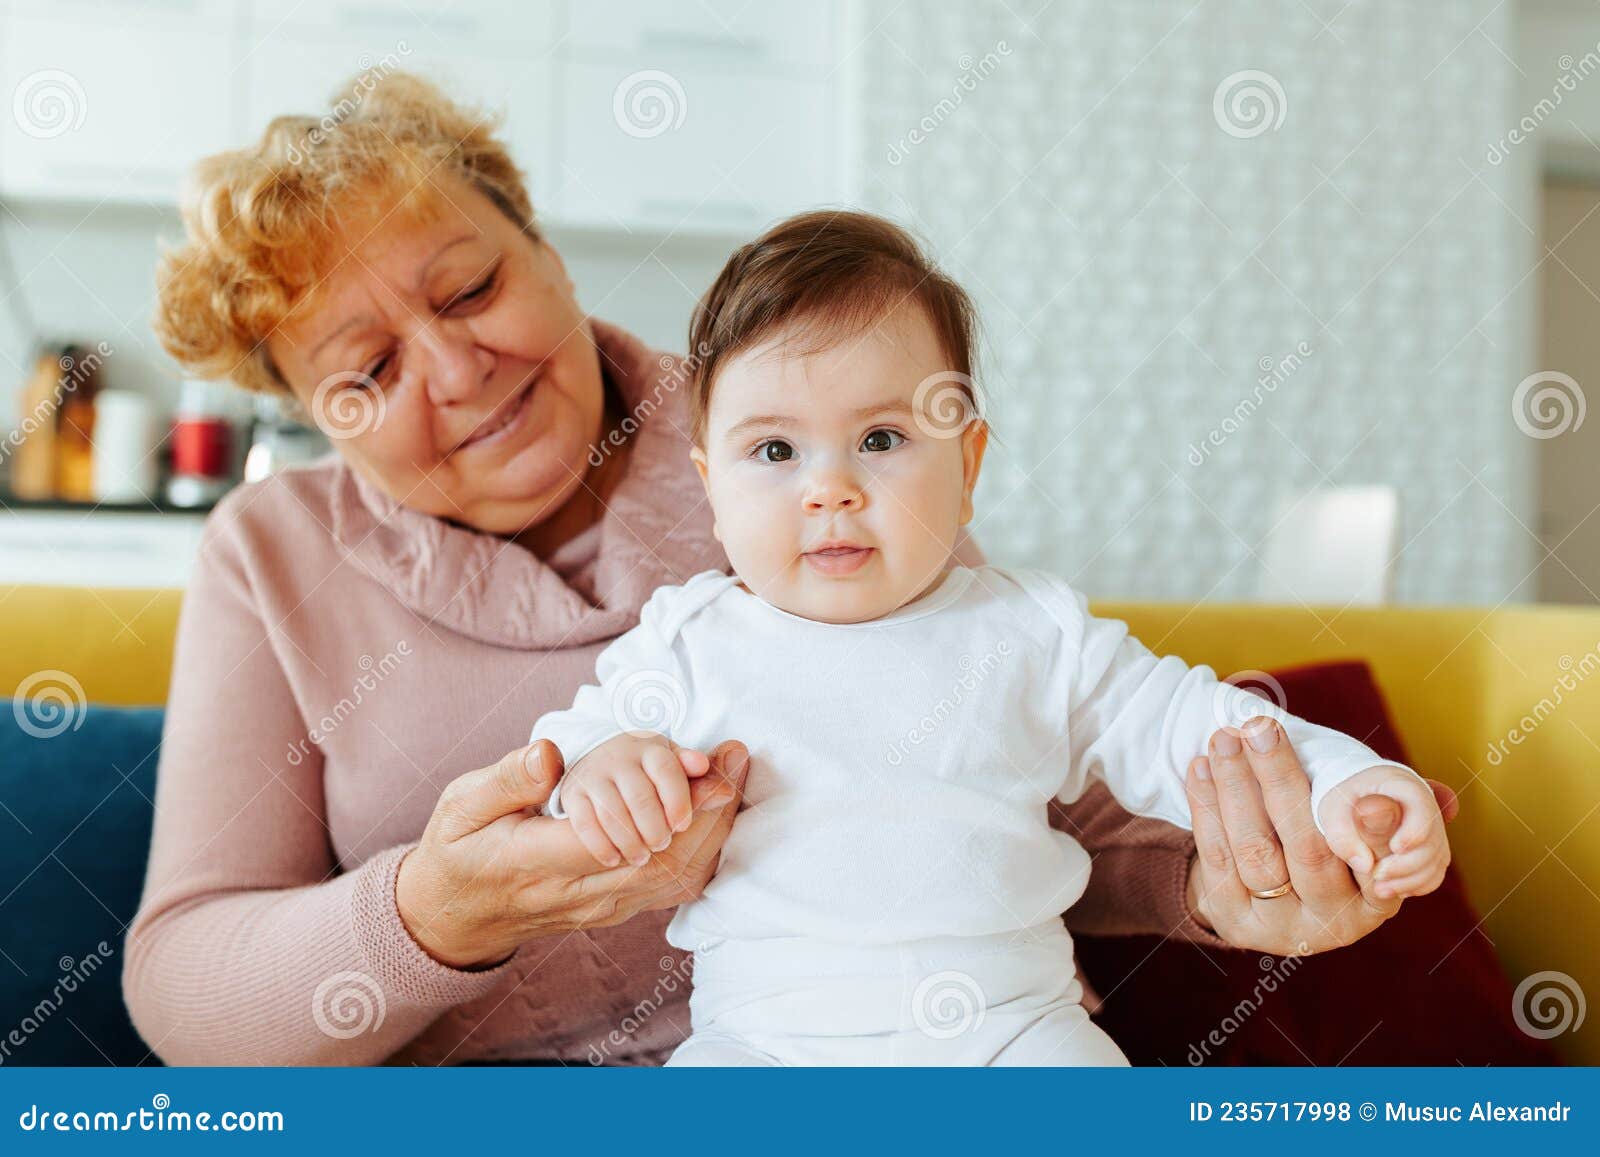 奶奶和孙女图片大全-奶奶和孙女高清图片下载-觅知网